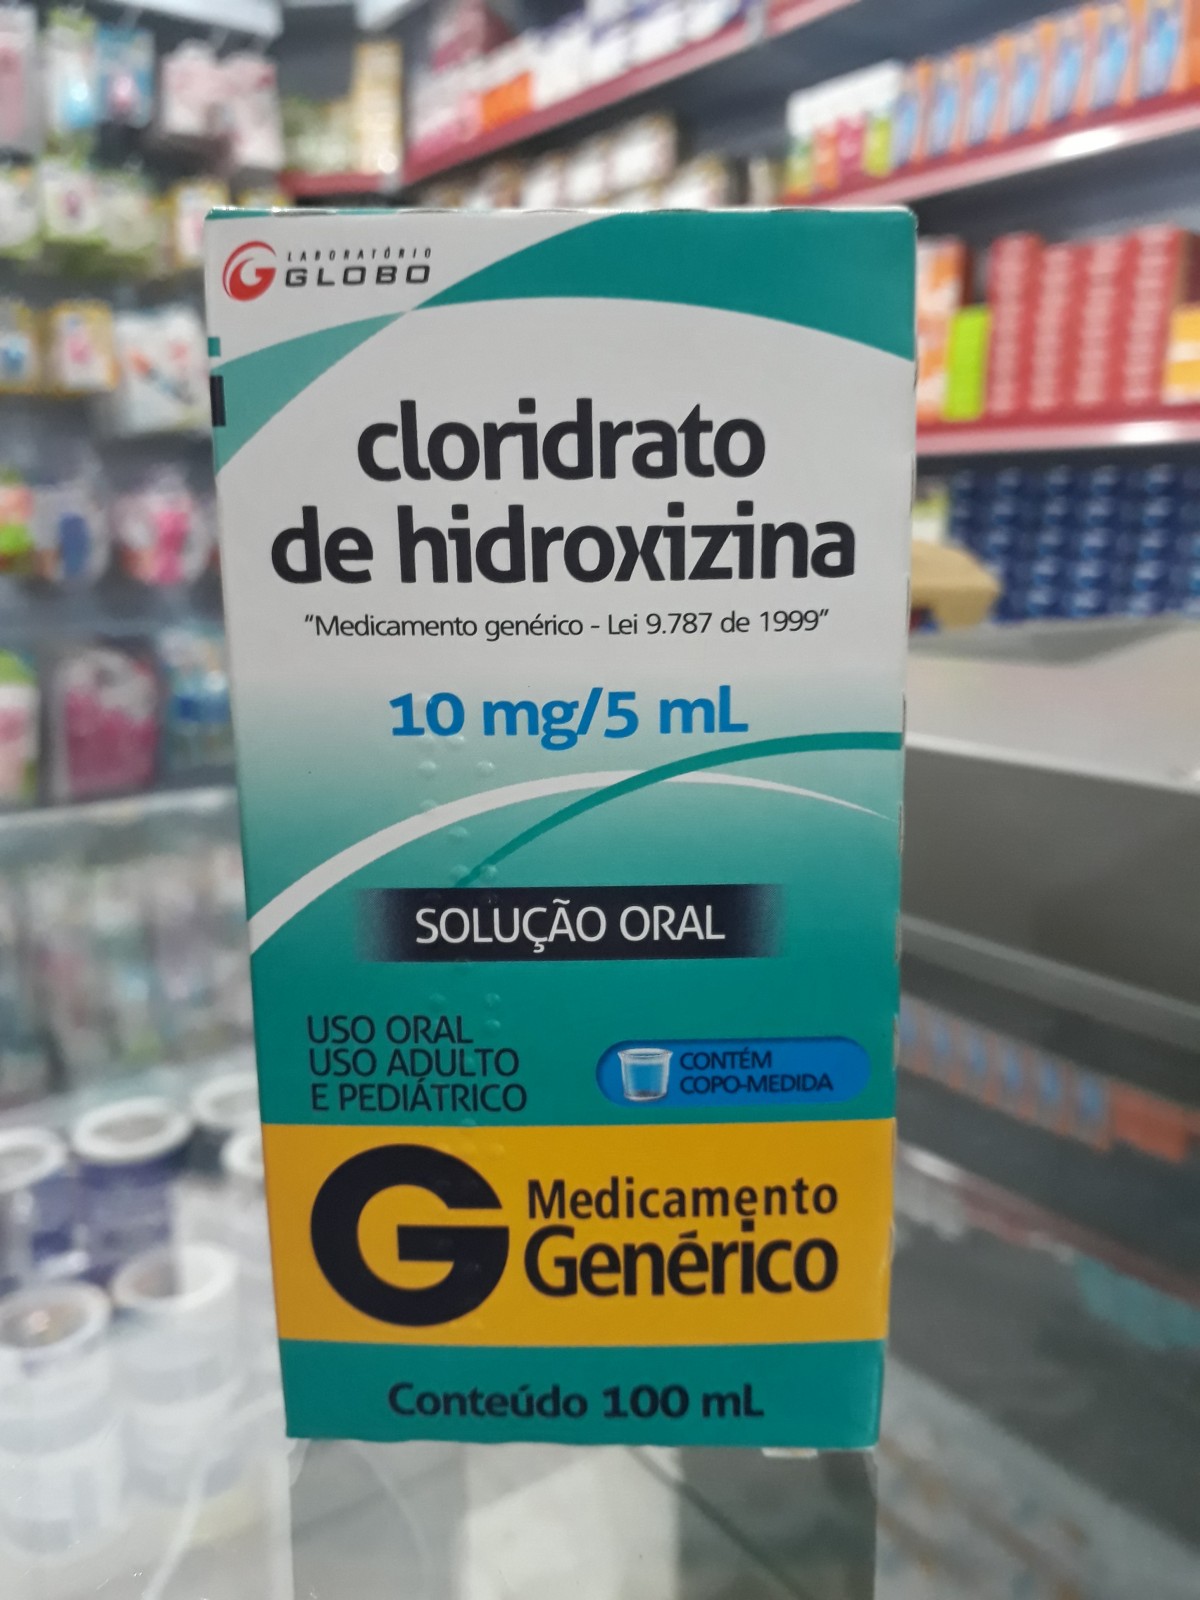 Descubra como o Dicloridrato de Hidroxizina pode ajudar na tosse